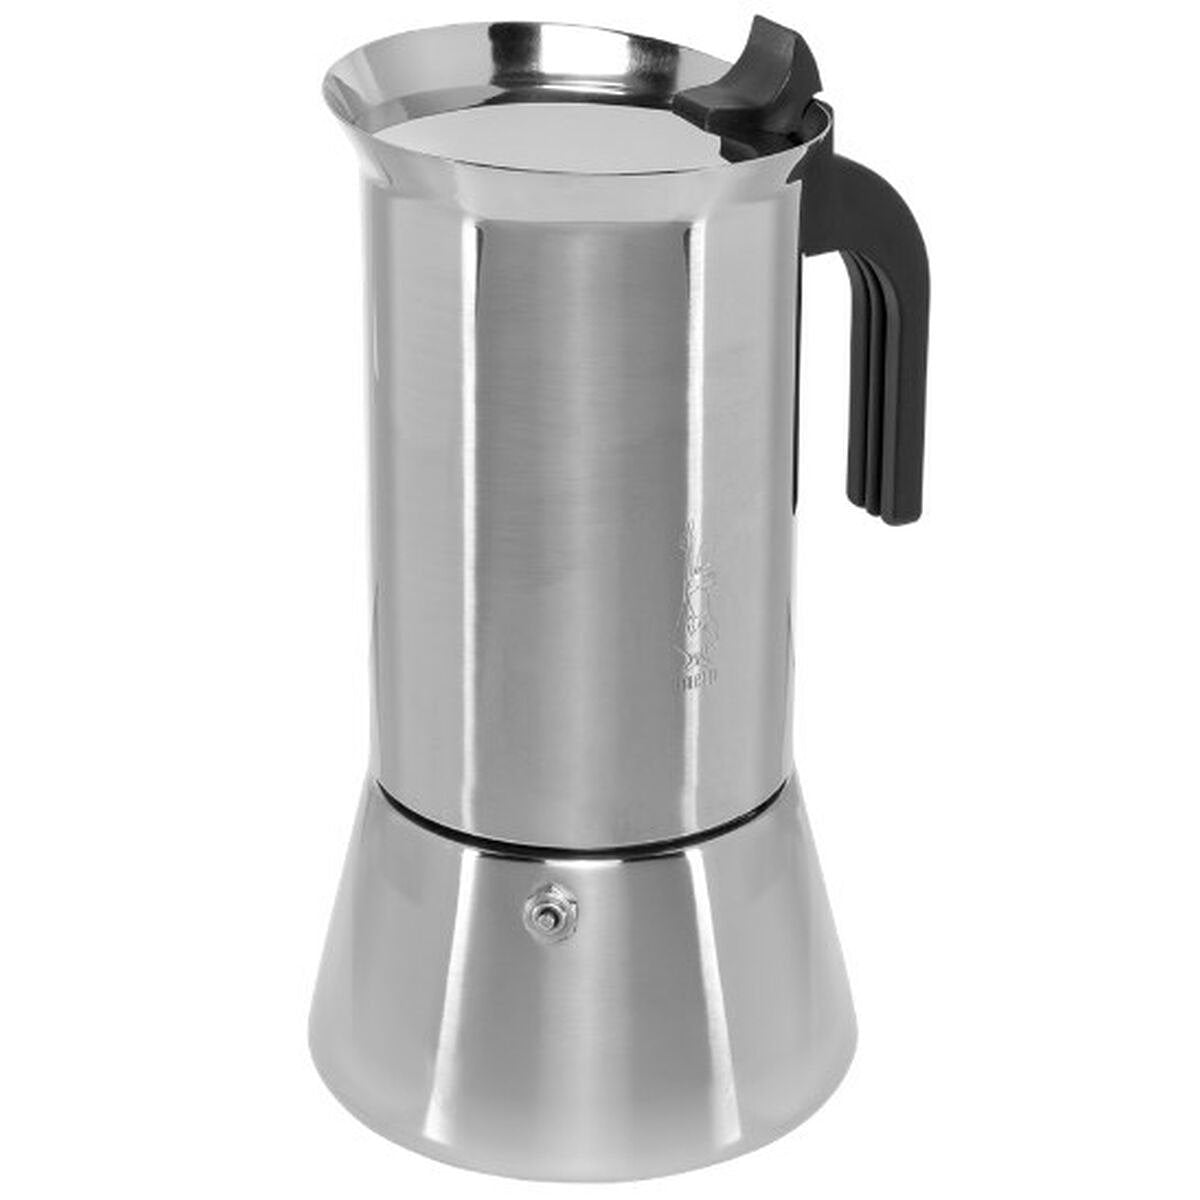 Italiaanse Koffiepot Bialetti New Venus Zilverkleurig Hout Roestvrij staal 240 ml 6 Kopjes